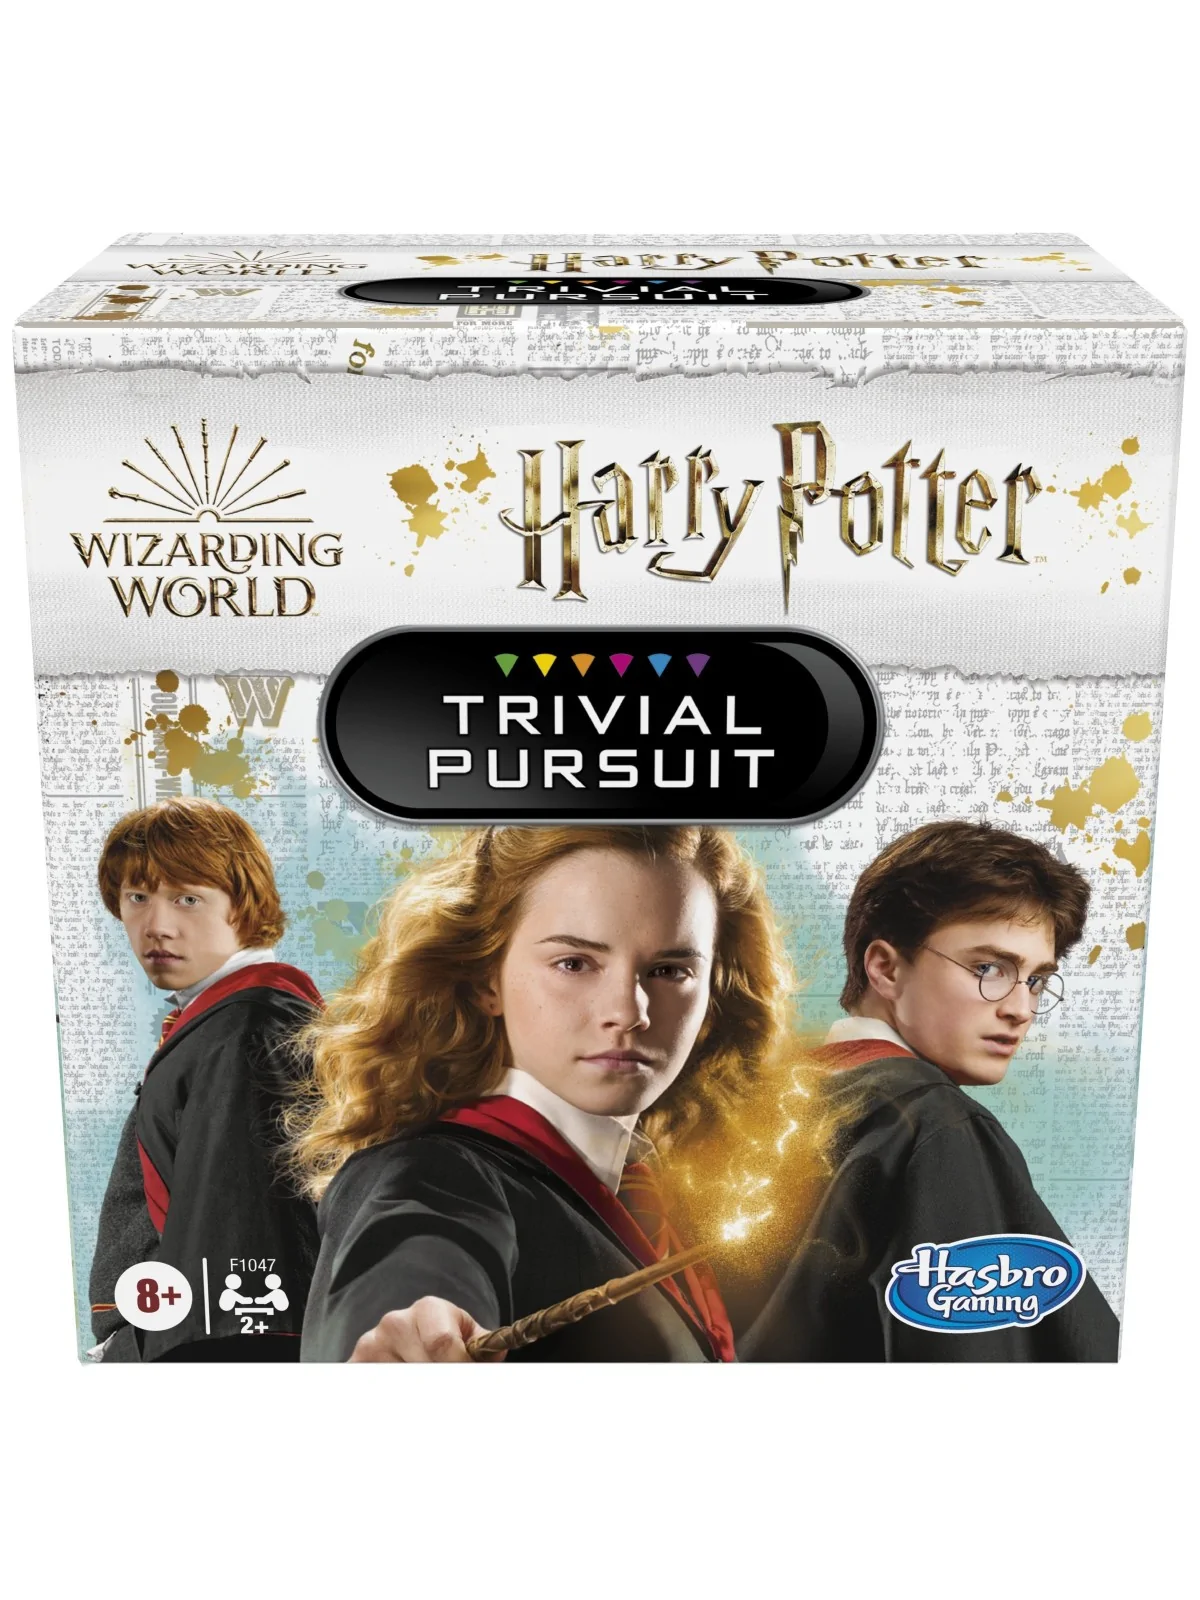 Comprar Harr Potter Trivial Pursuit barato al mejor precio 16,99 € de 